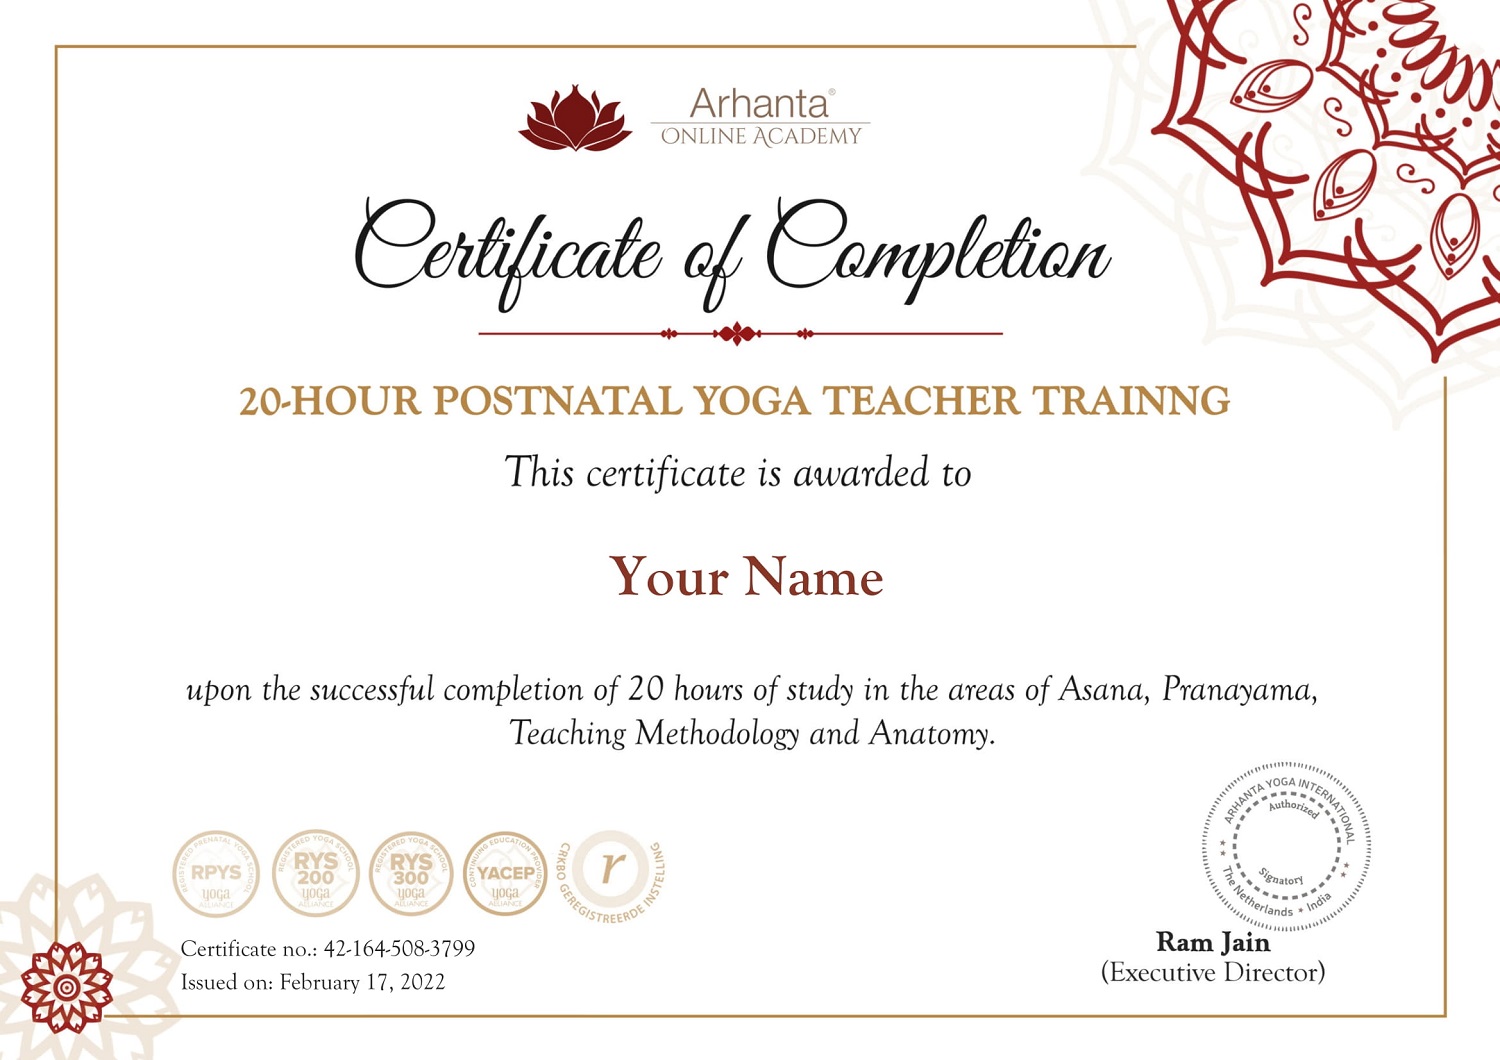 Certificado de Formação de Professores de Yoga Online Pós-Natal de 20 horas